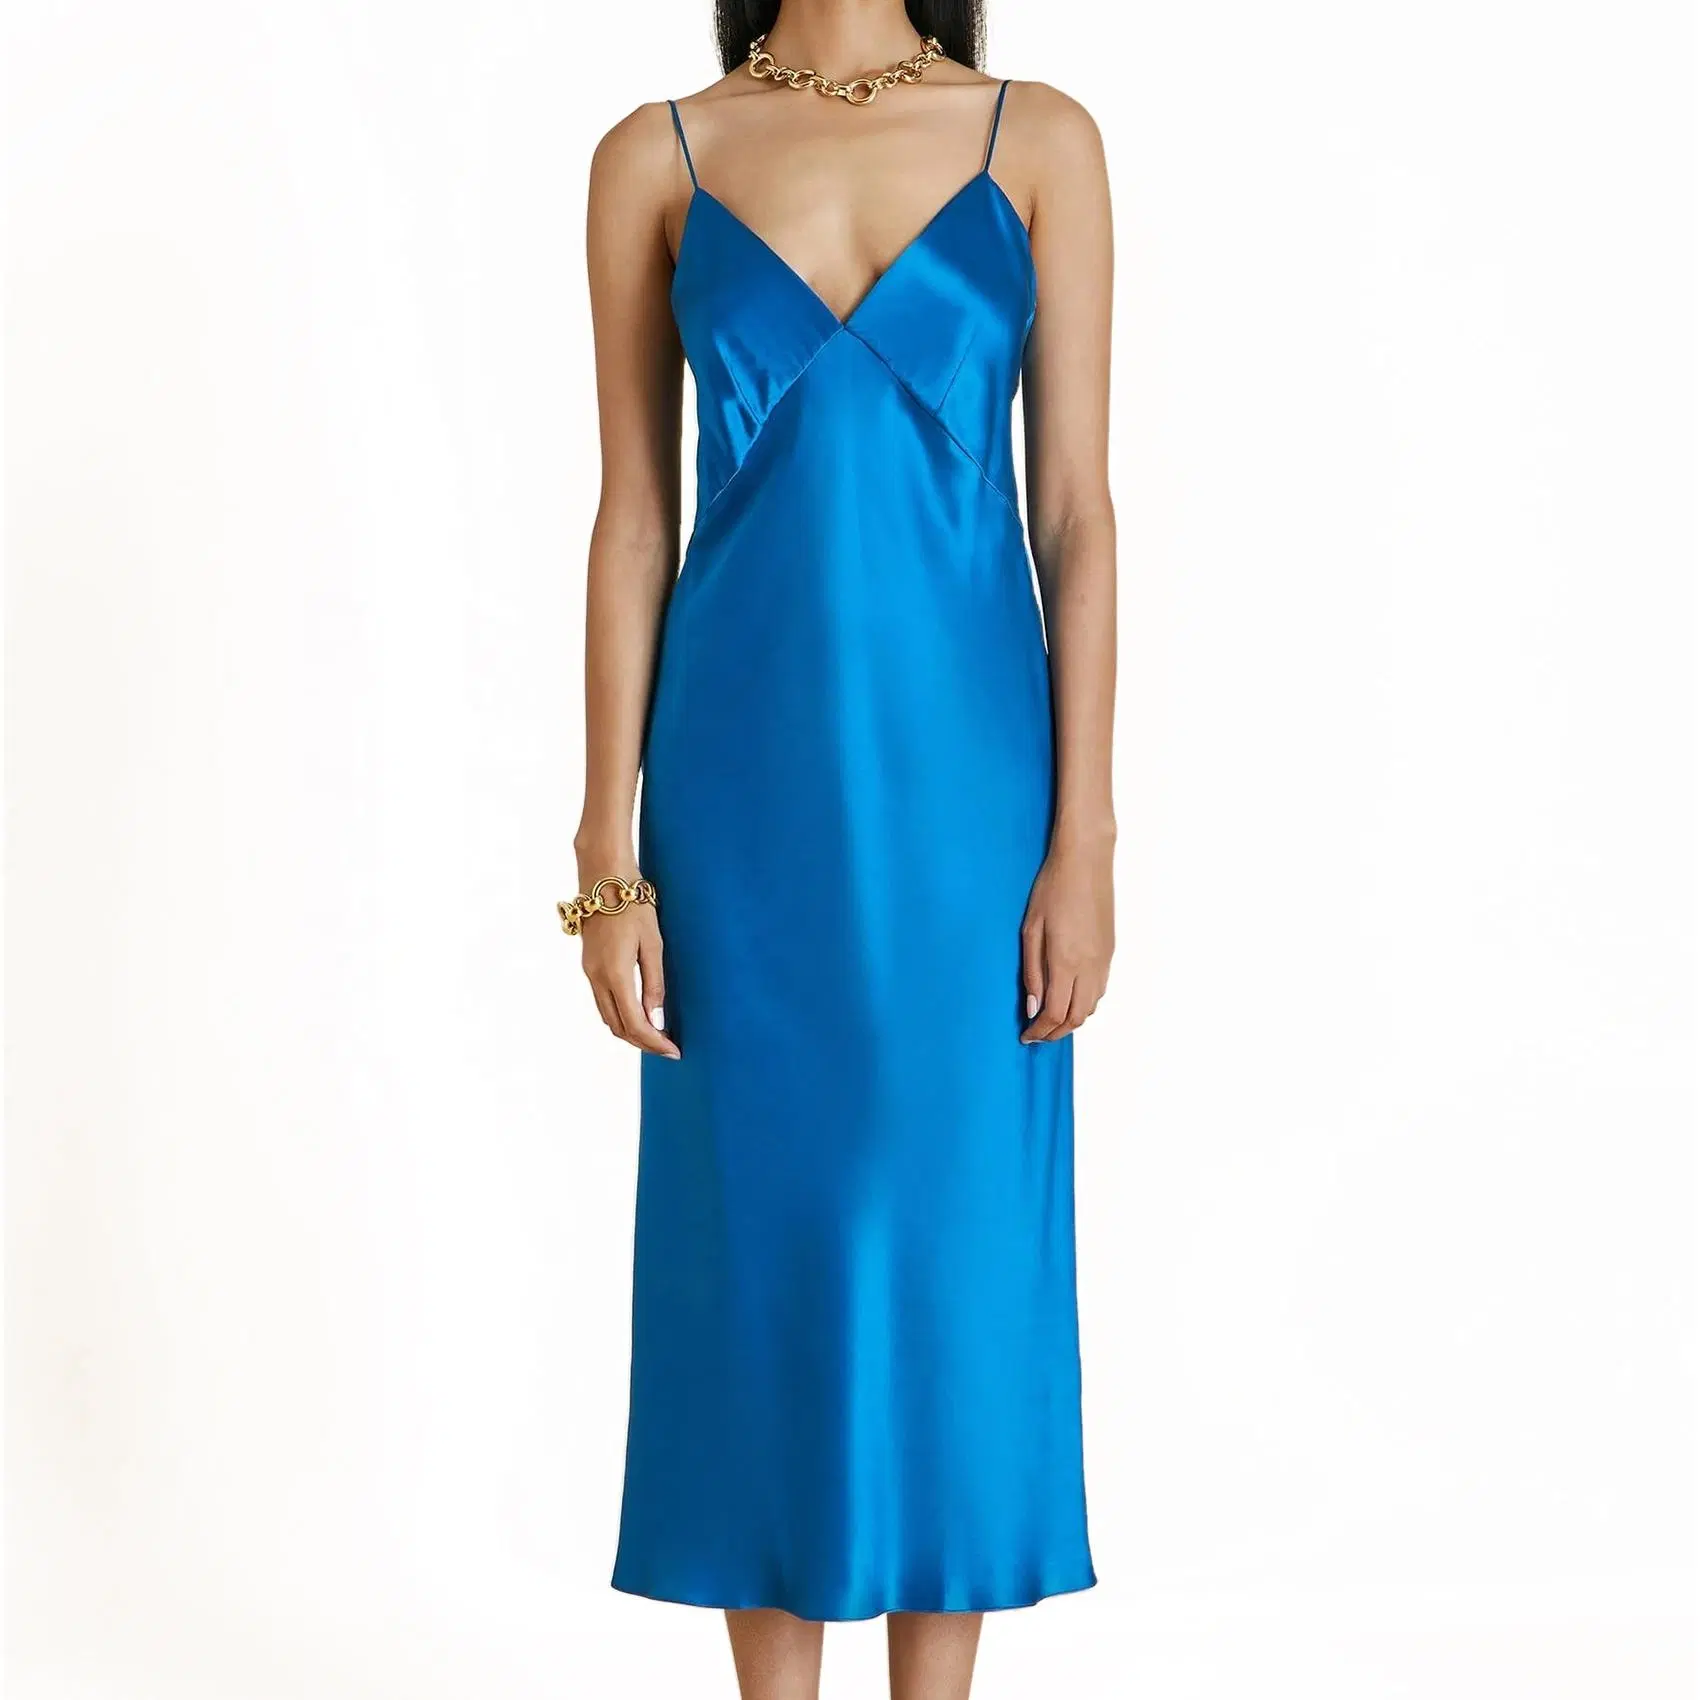 Comercio al por mayor ropa de seda china Correas ajustables de la mujer 100% seda Maxi vestido de Backless